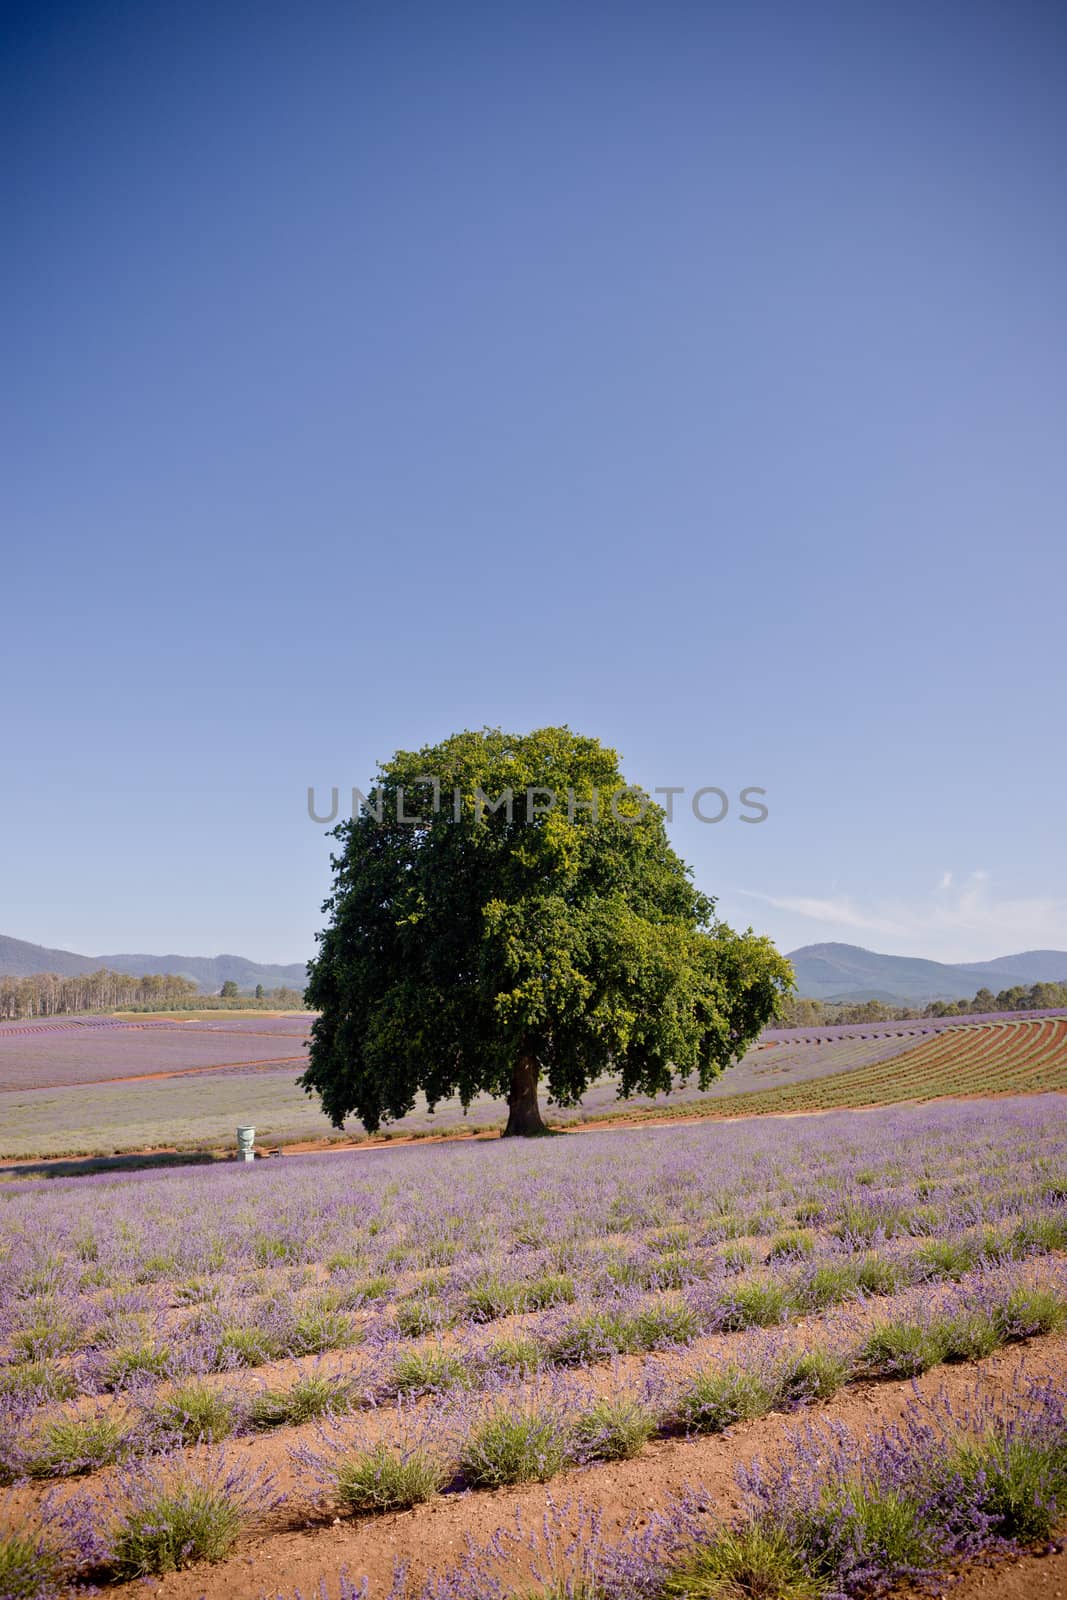 Single tree in lavender fields by jrstock